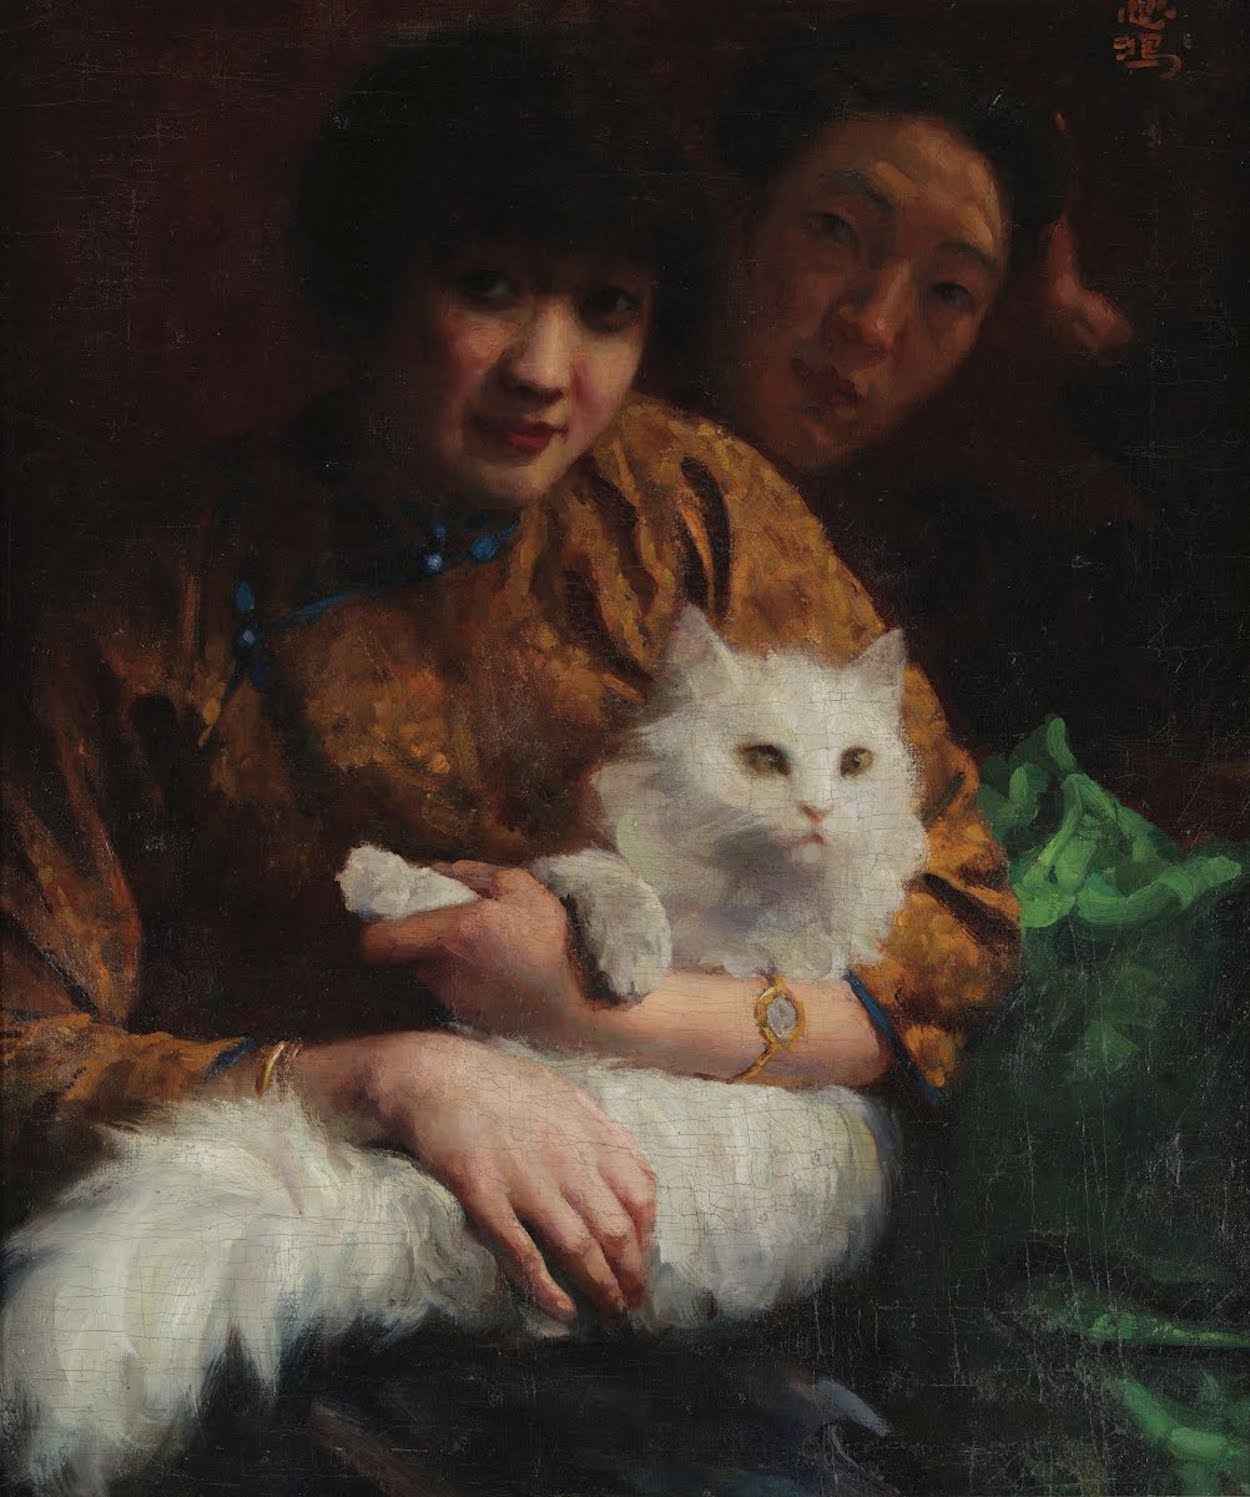 Głaskanie kota by Xu Beihong - 1924 - 65 x 53 cm 